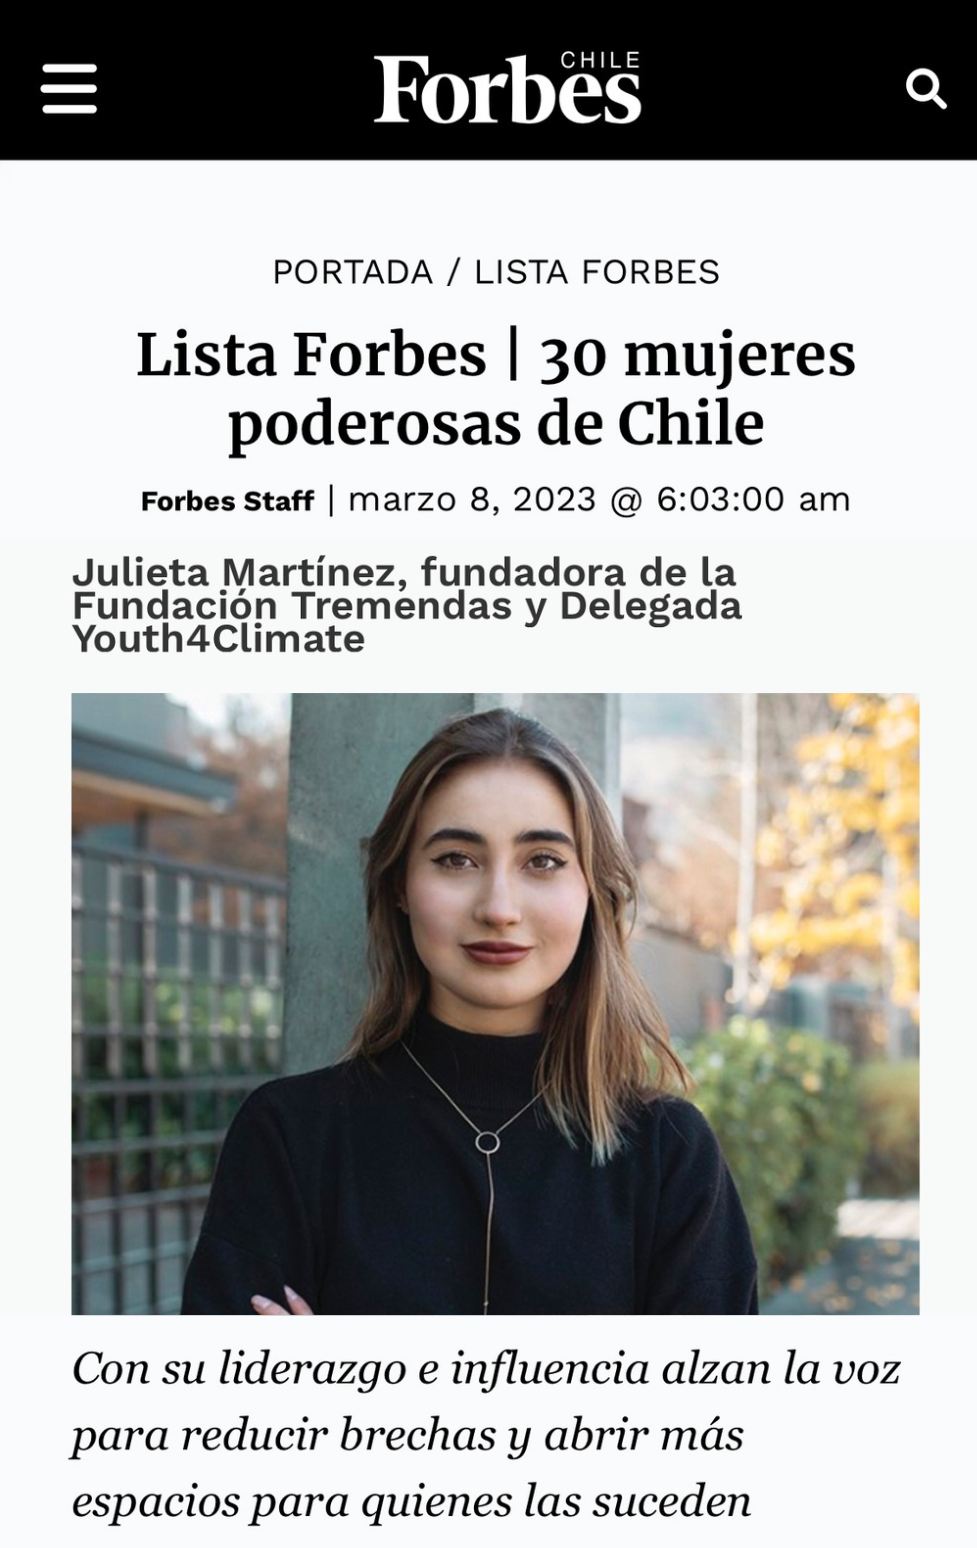 Julieta entre las 30 mujeres más poderosas de Chile según Forbes